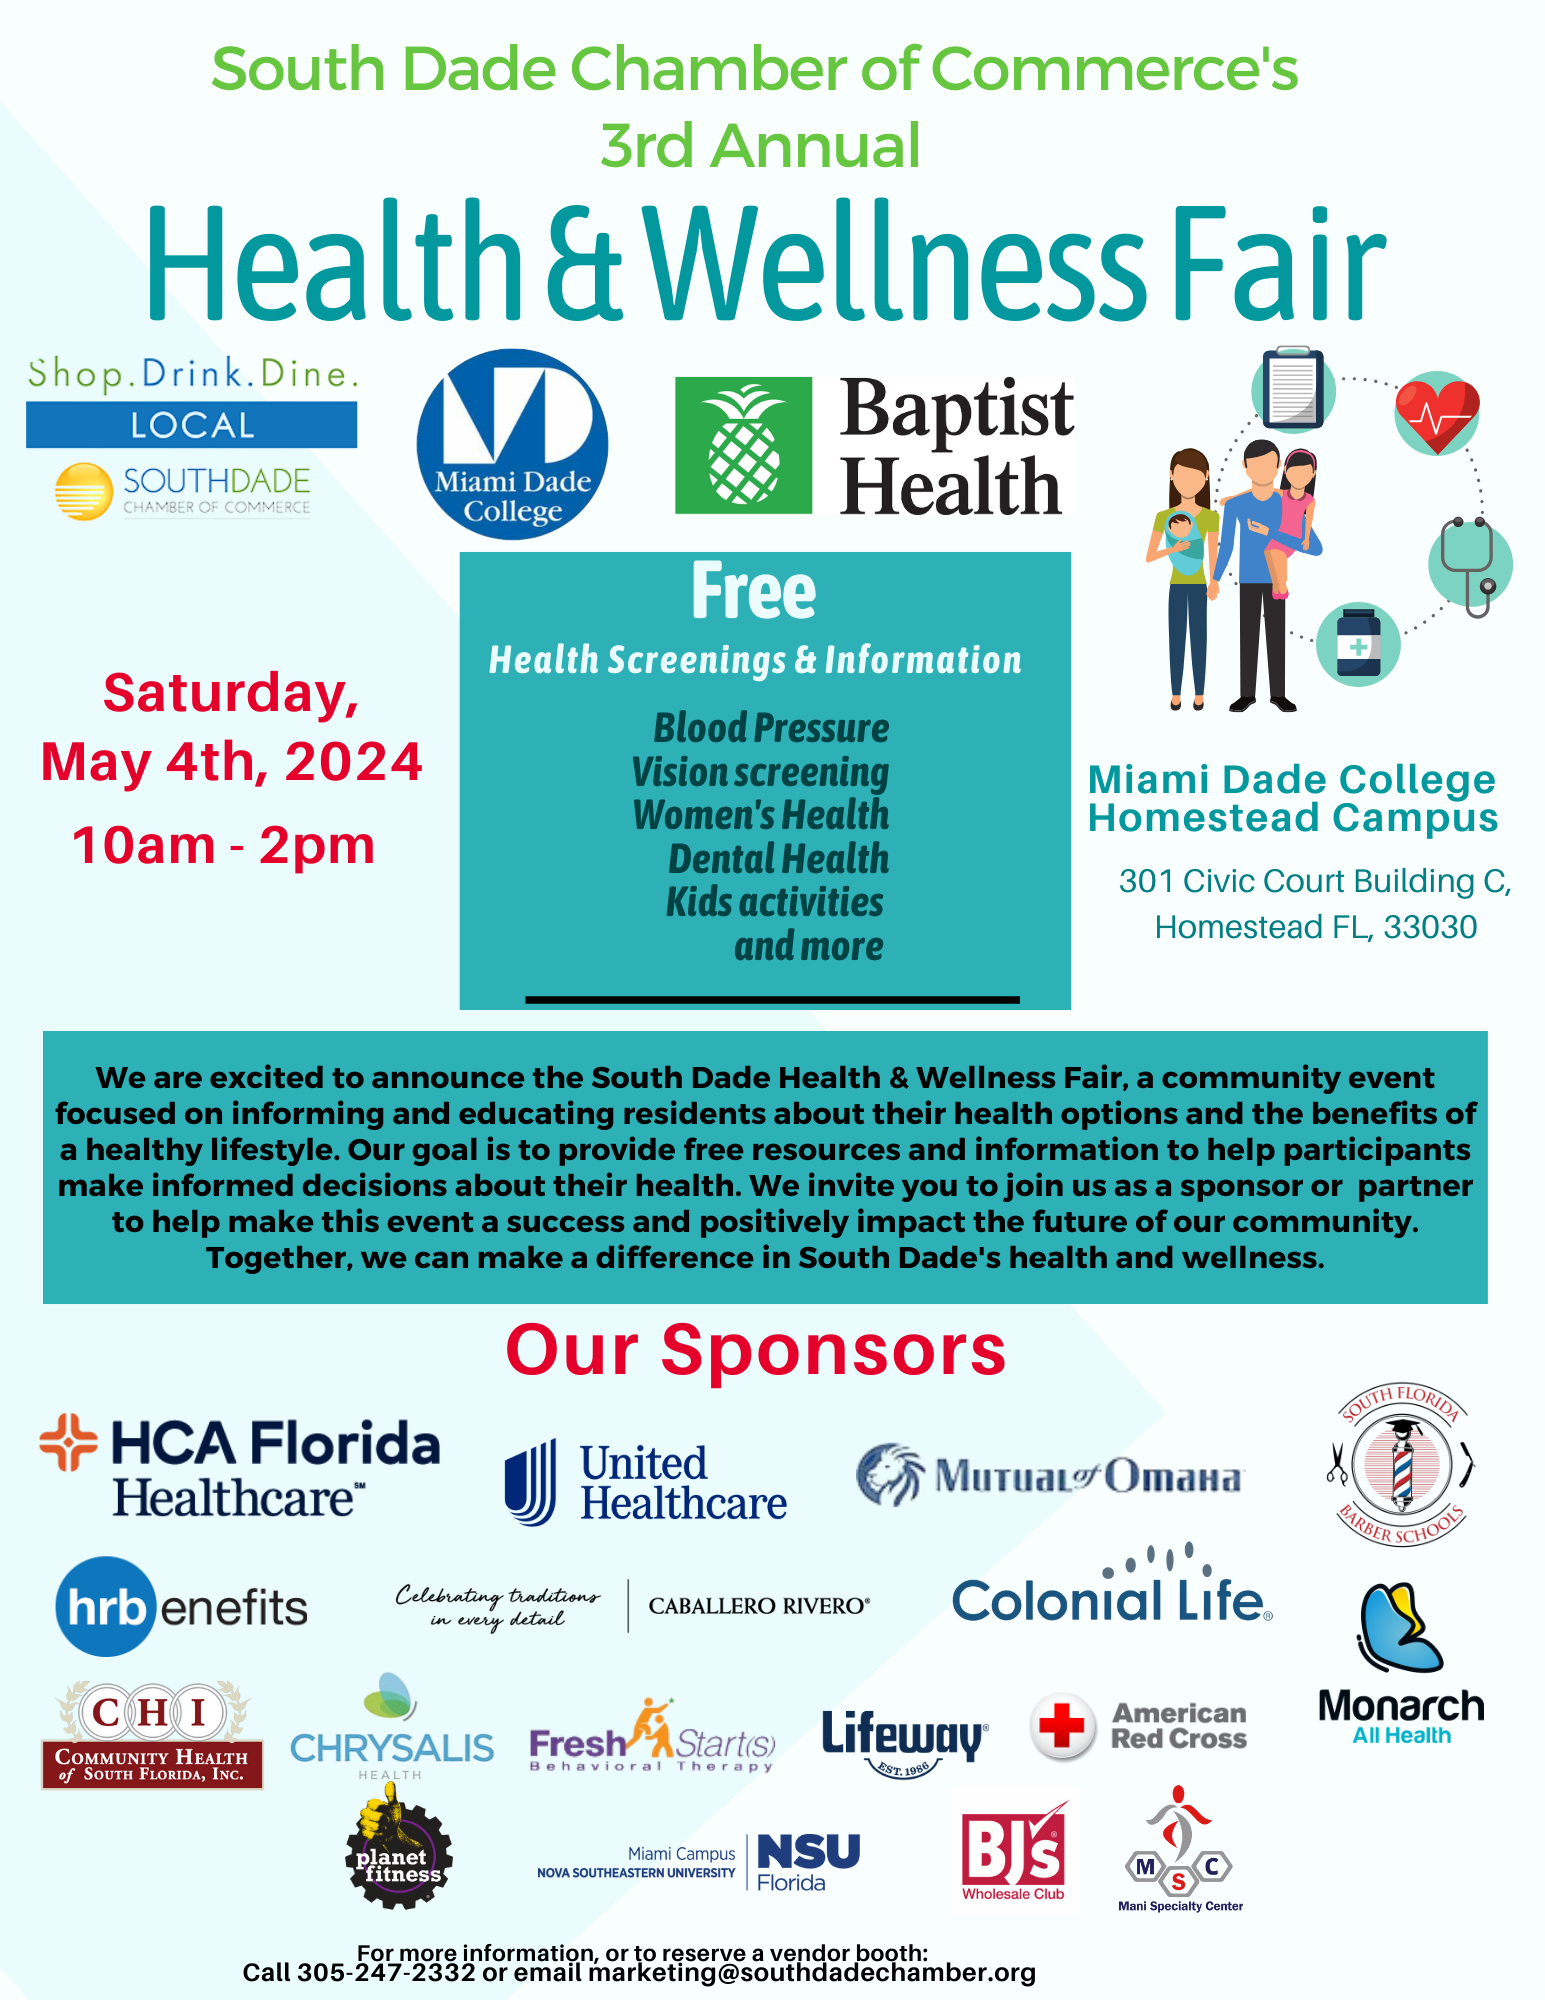 SDCC Health & Wellness Fair